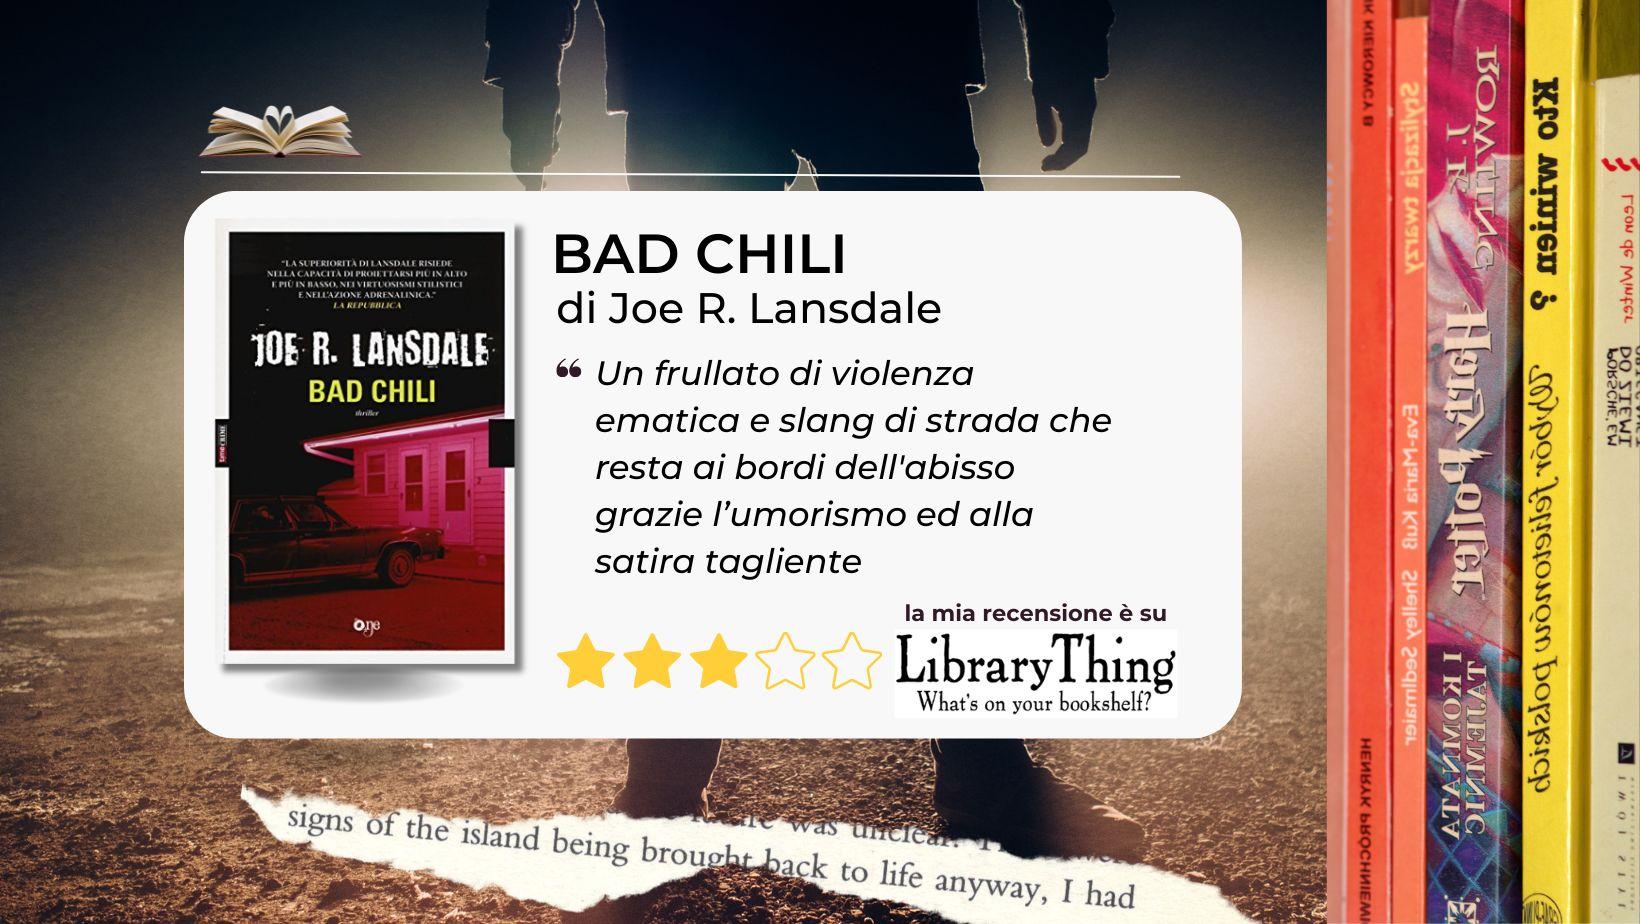 "Bad chili" di Joe R. Lansdale straccia le buone maniere e ci sporca di sangue e fango